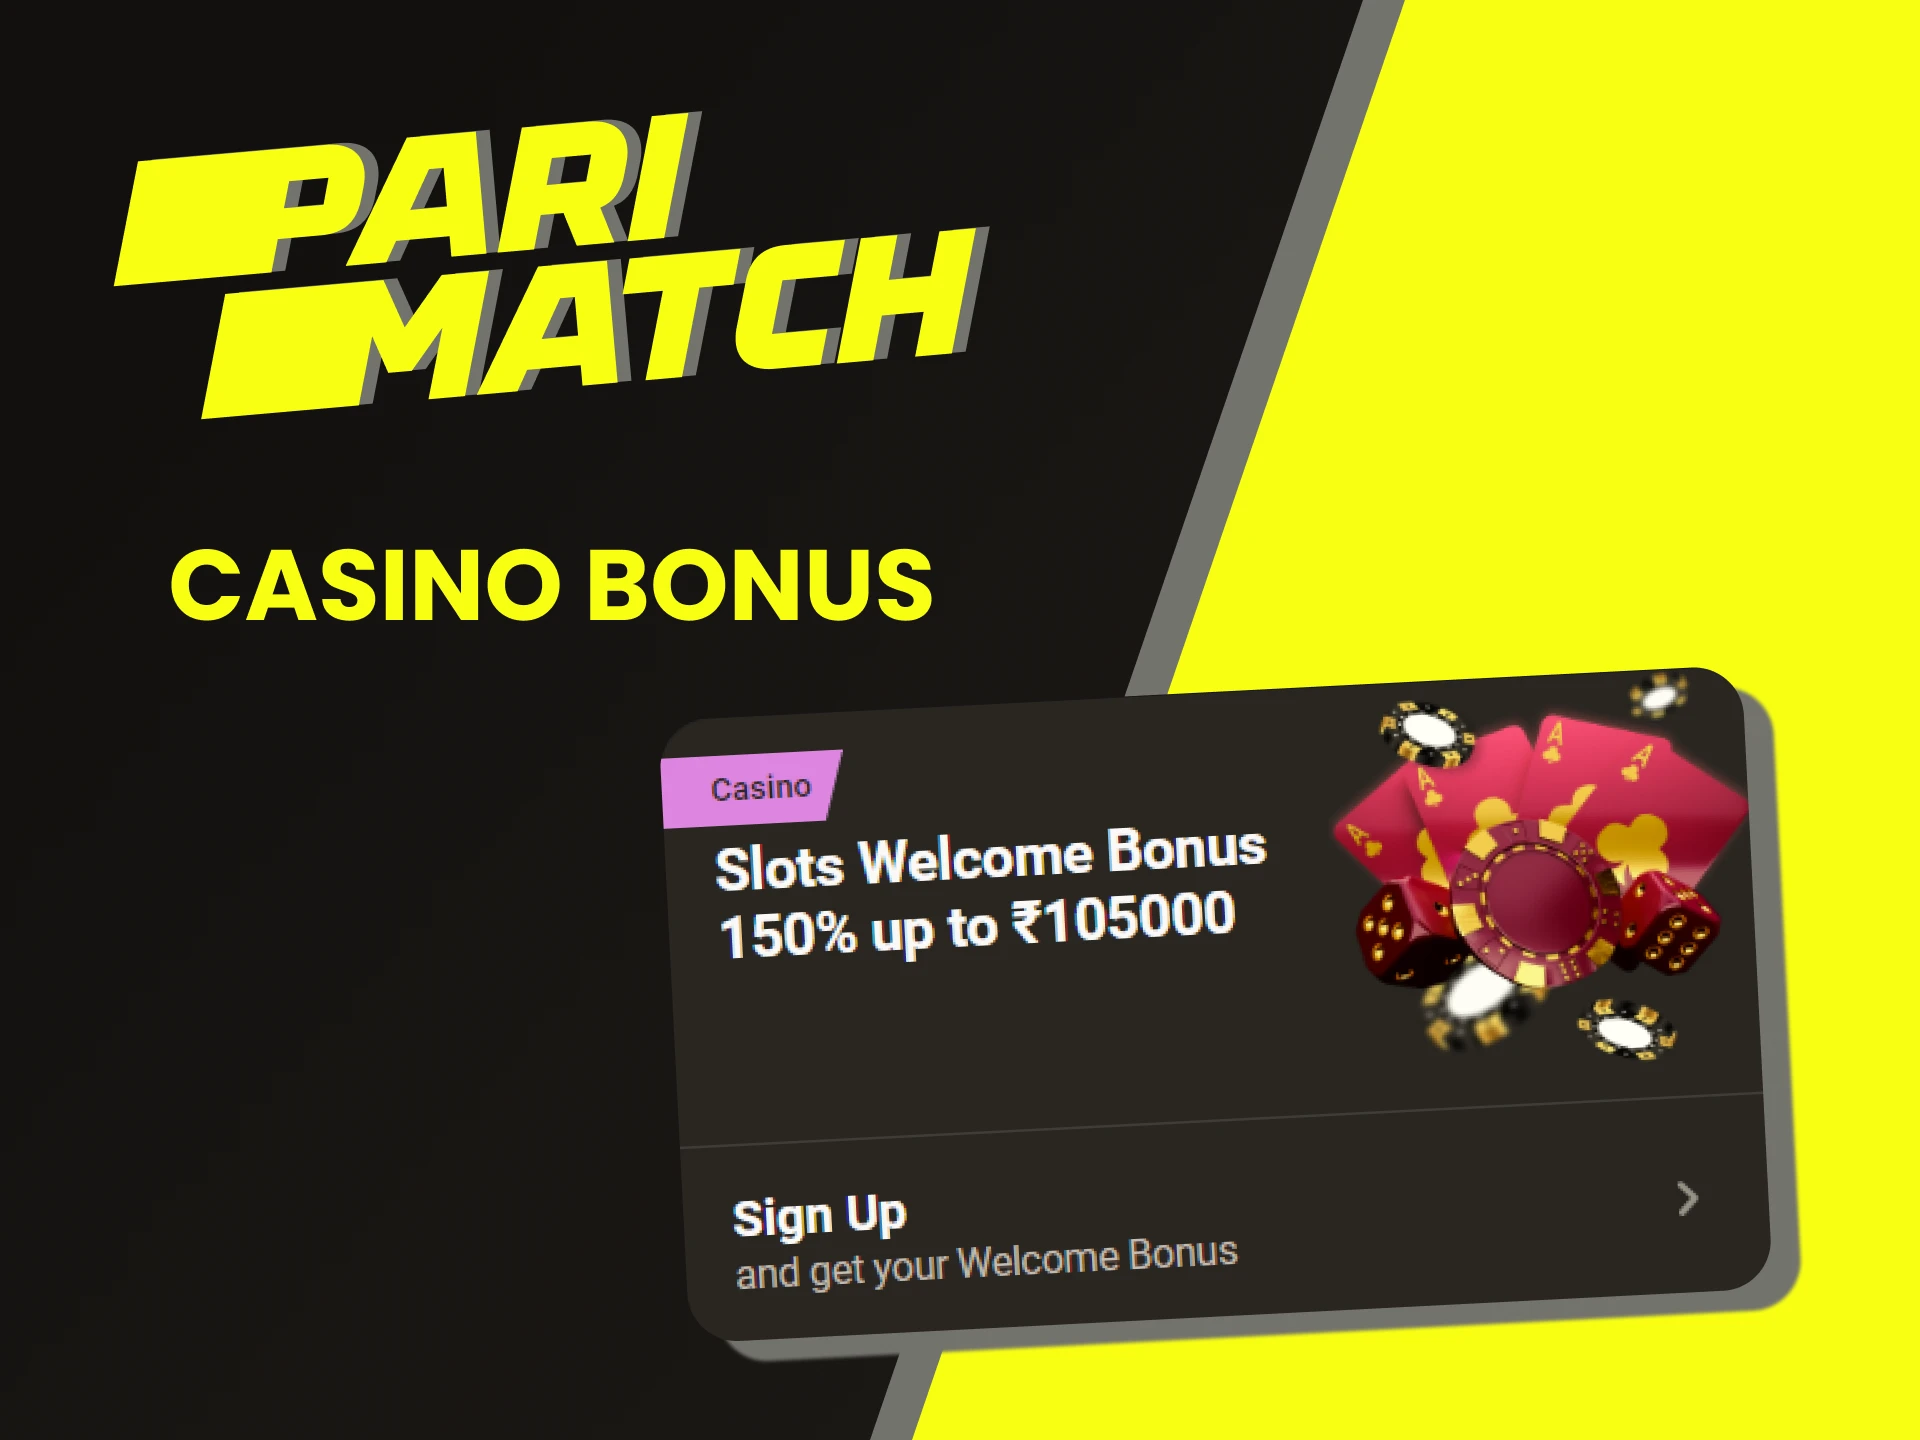 Parimatch has a casino welcome bonus.